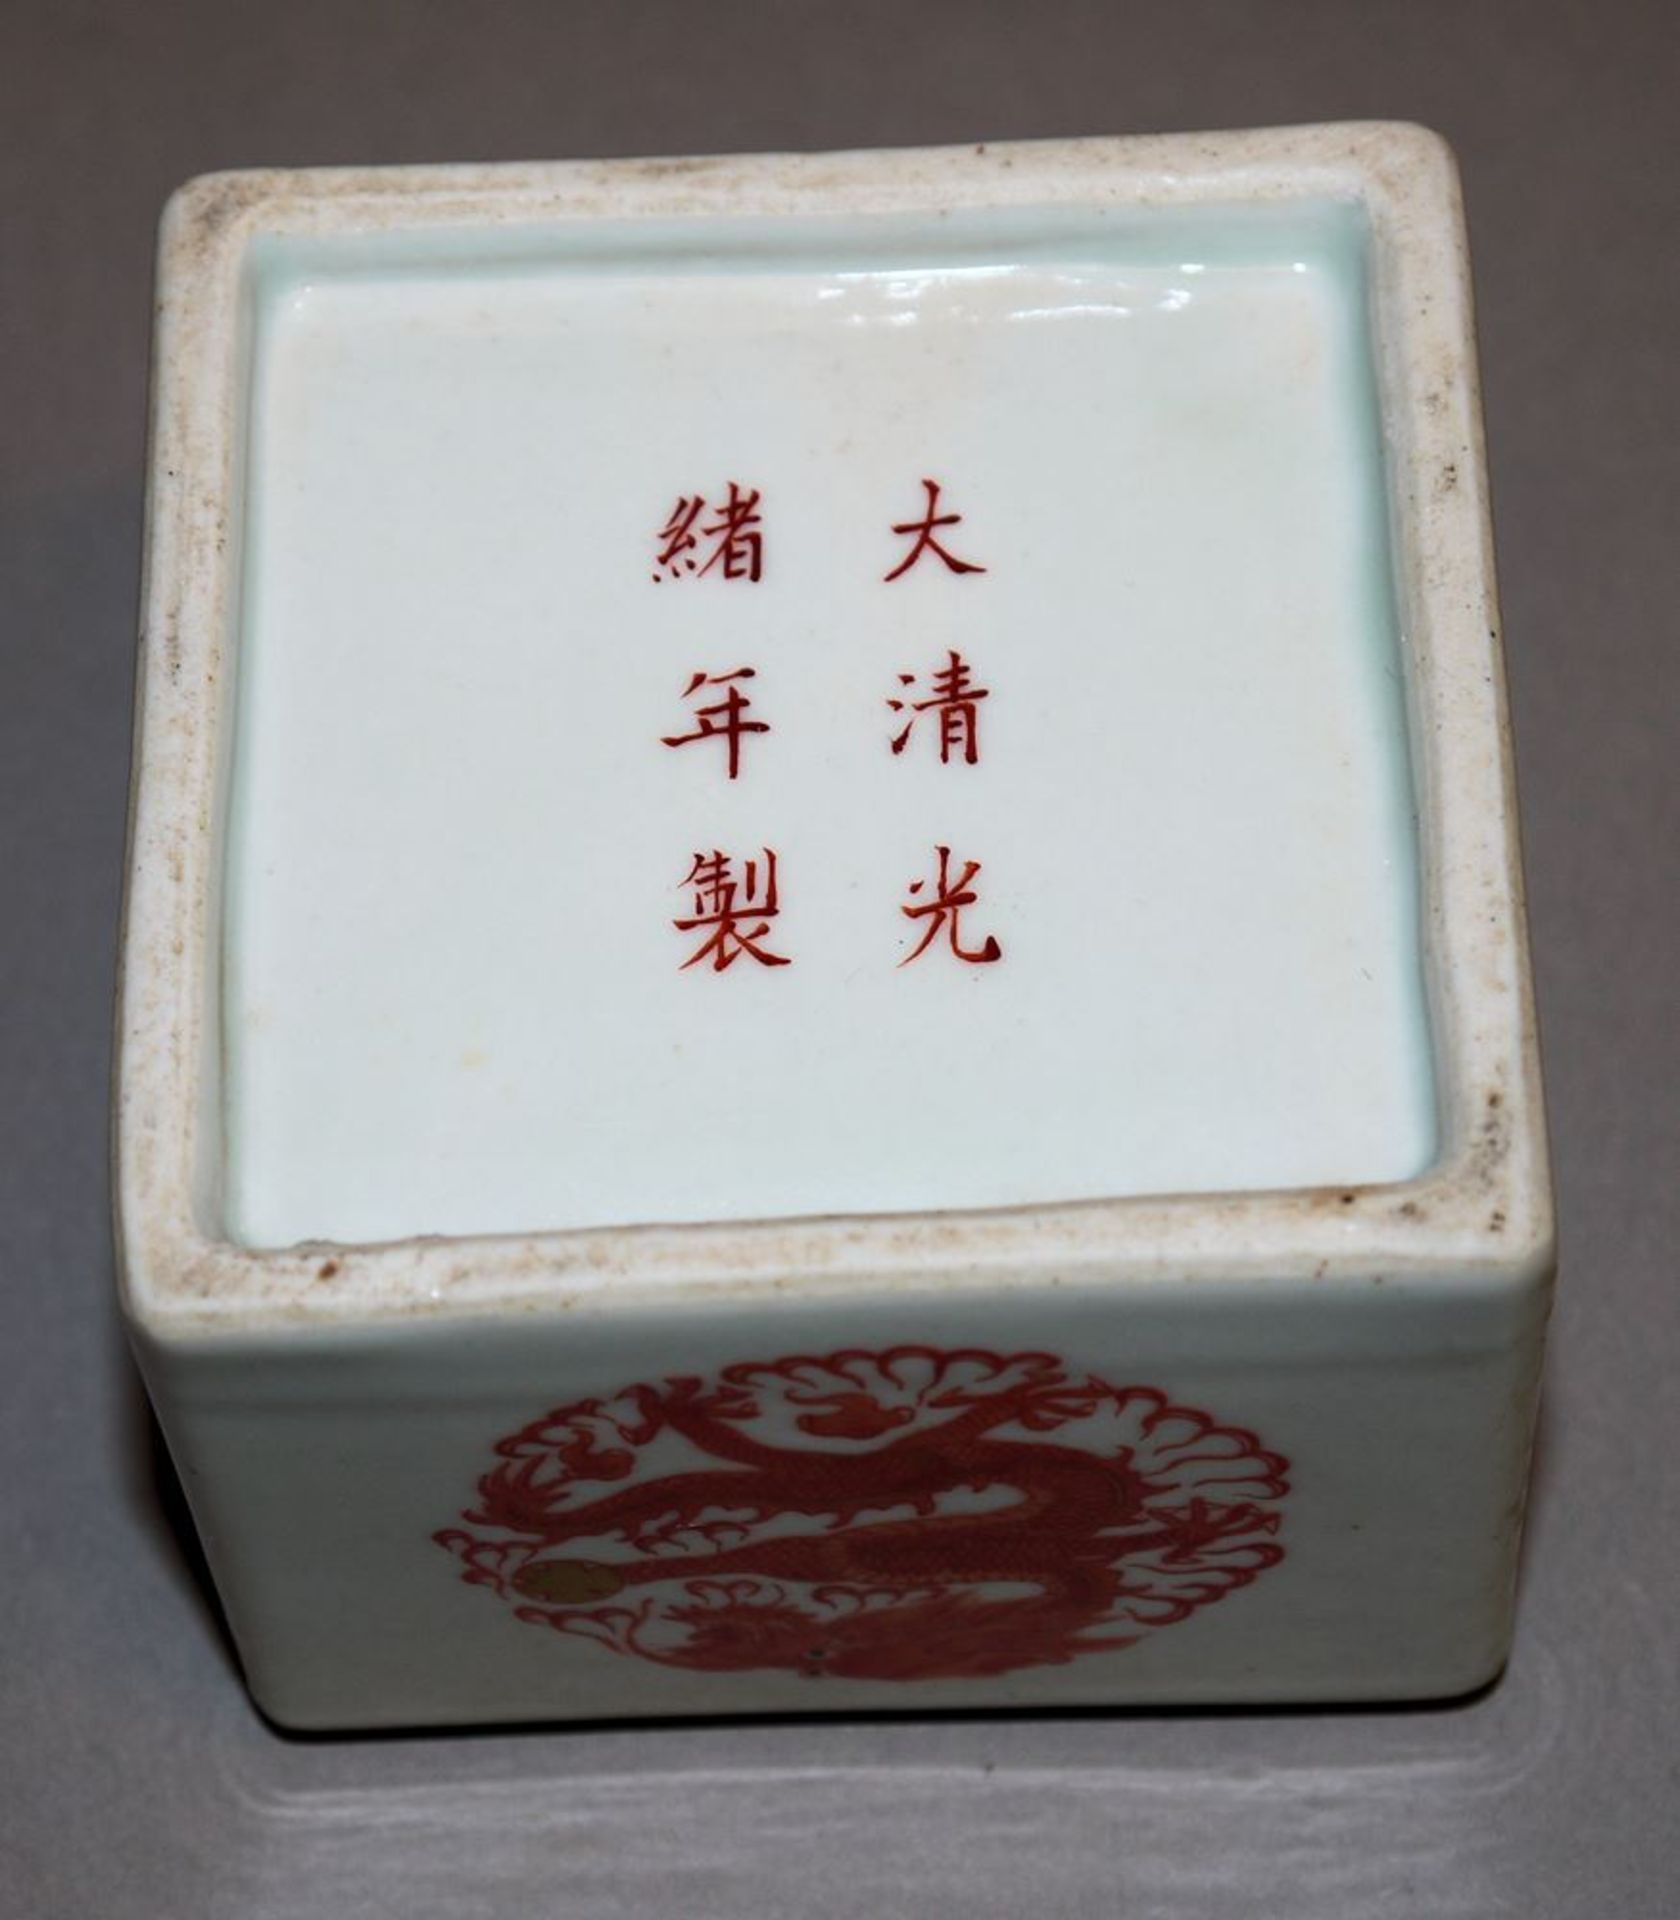 Tuschedose mit roten Drachen, Guangxu- oder chinesische Republik-Zeit - Image 3 of 3